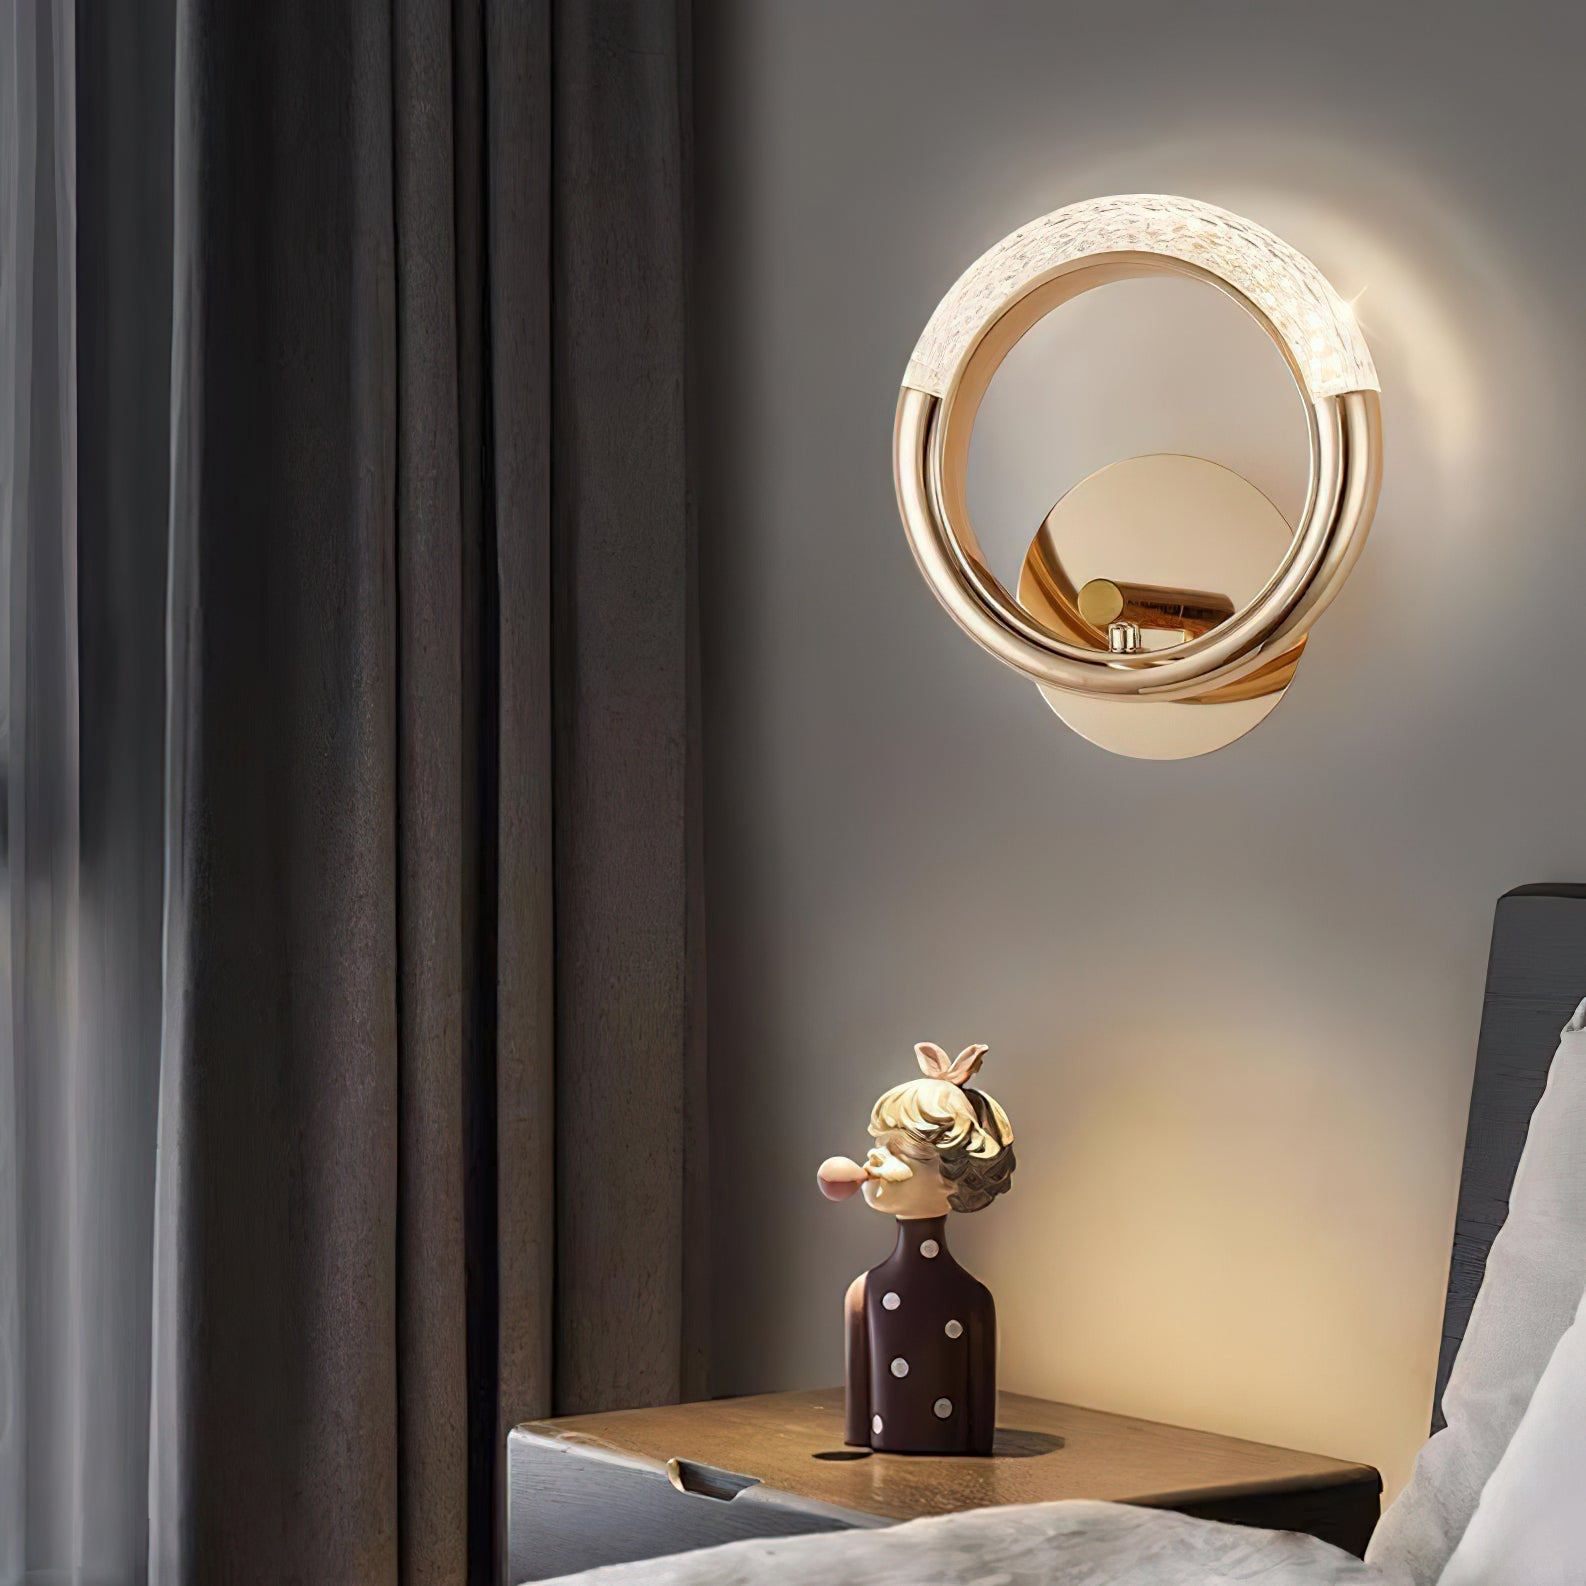 Adaptable Angle Rotatable Wall Lamp - Luxurious Metallic Design